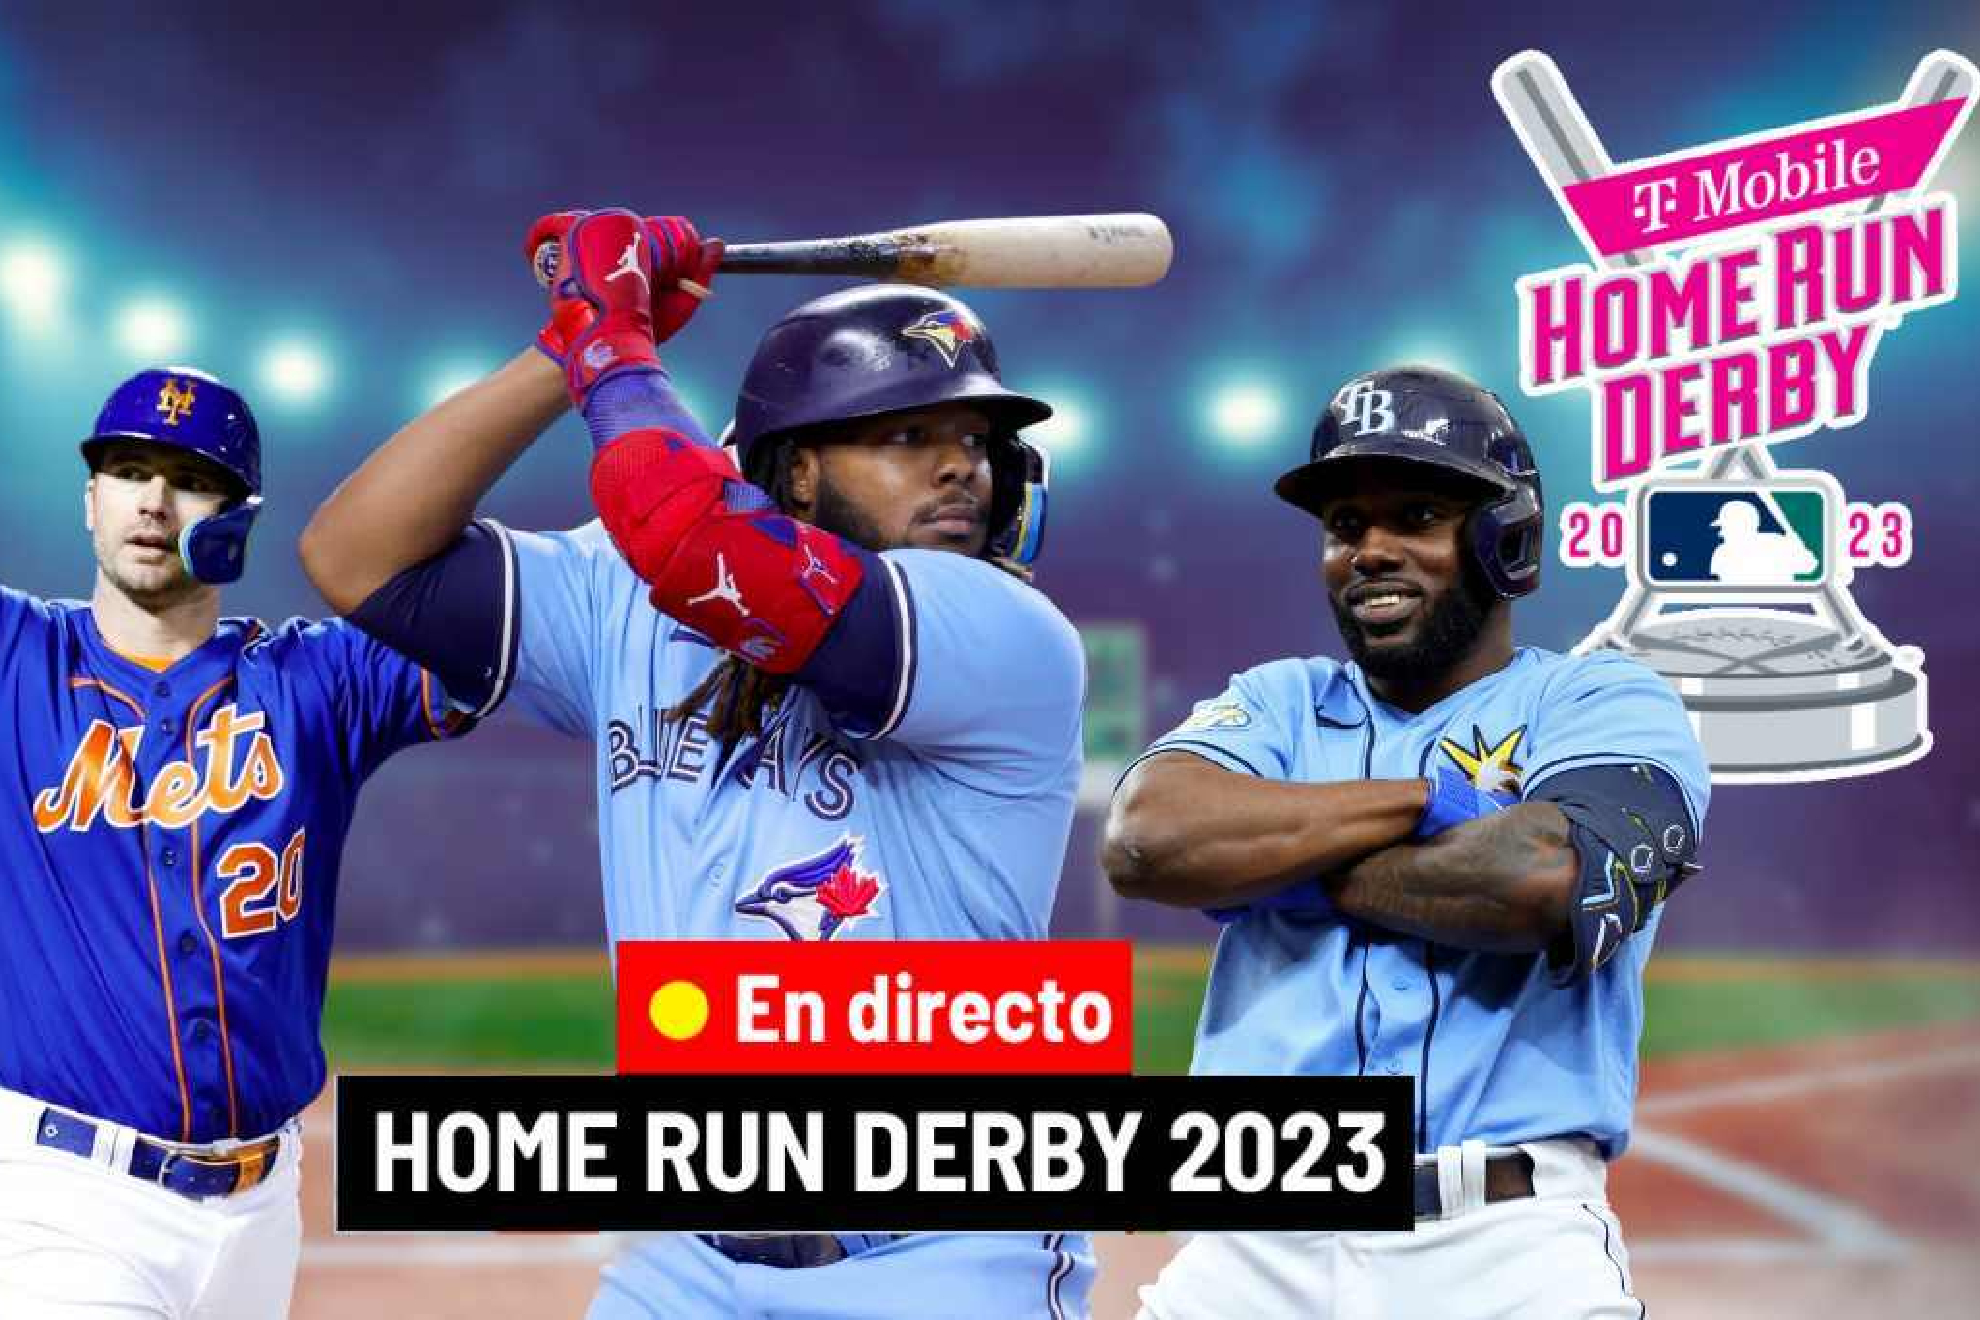 Estrategia y mentalidad de Vadimir Guerrero Jr. para el Home Run Derby 2023